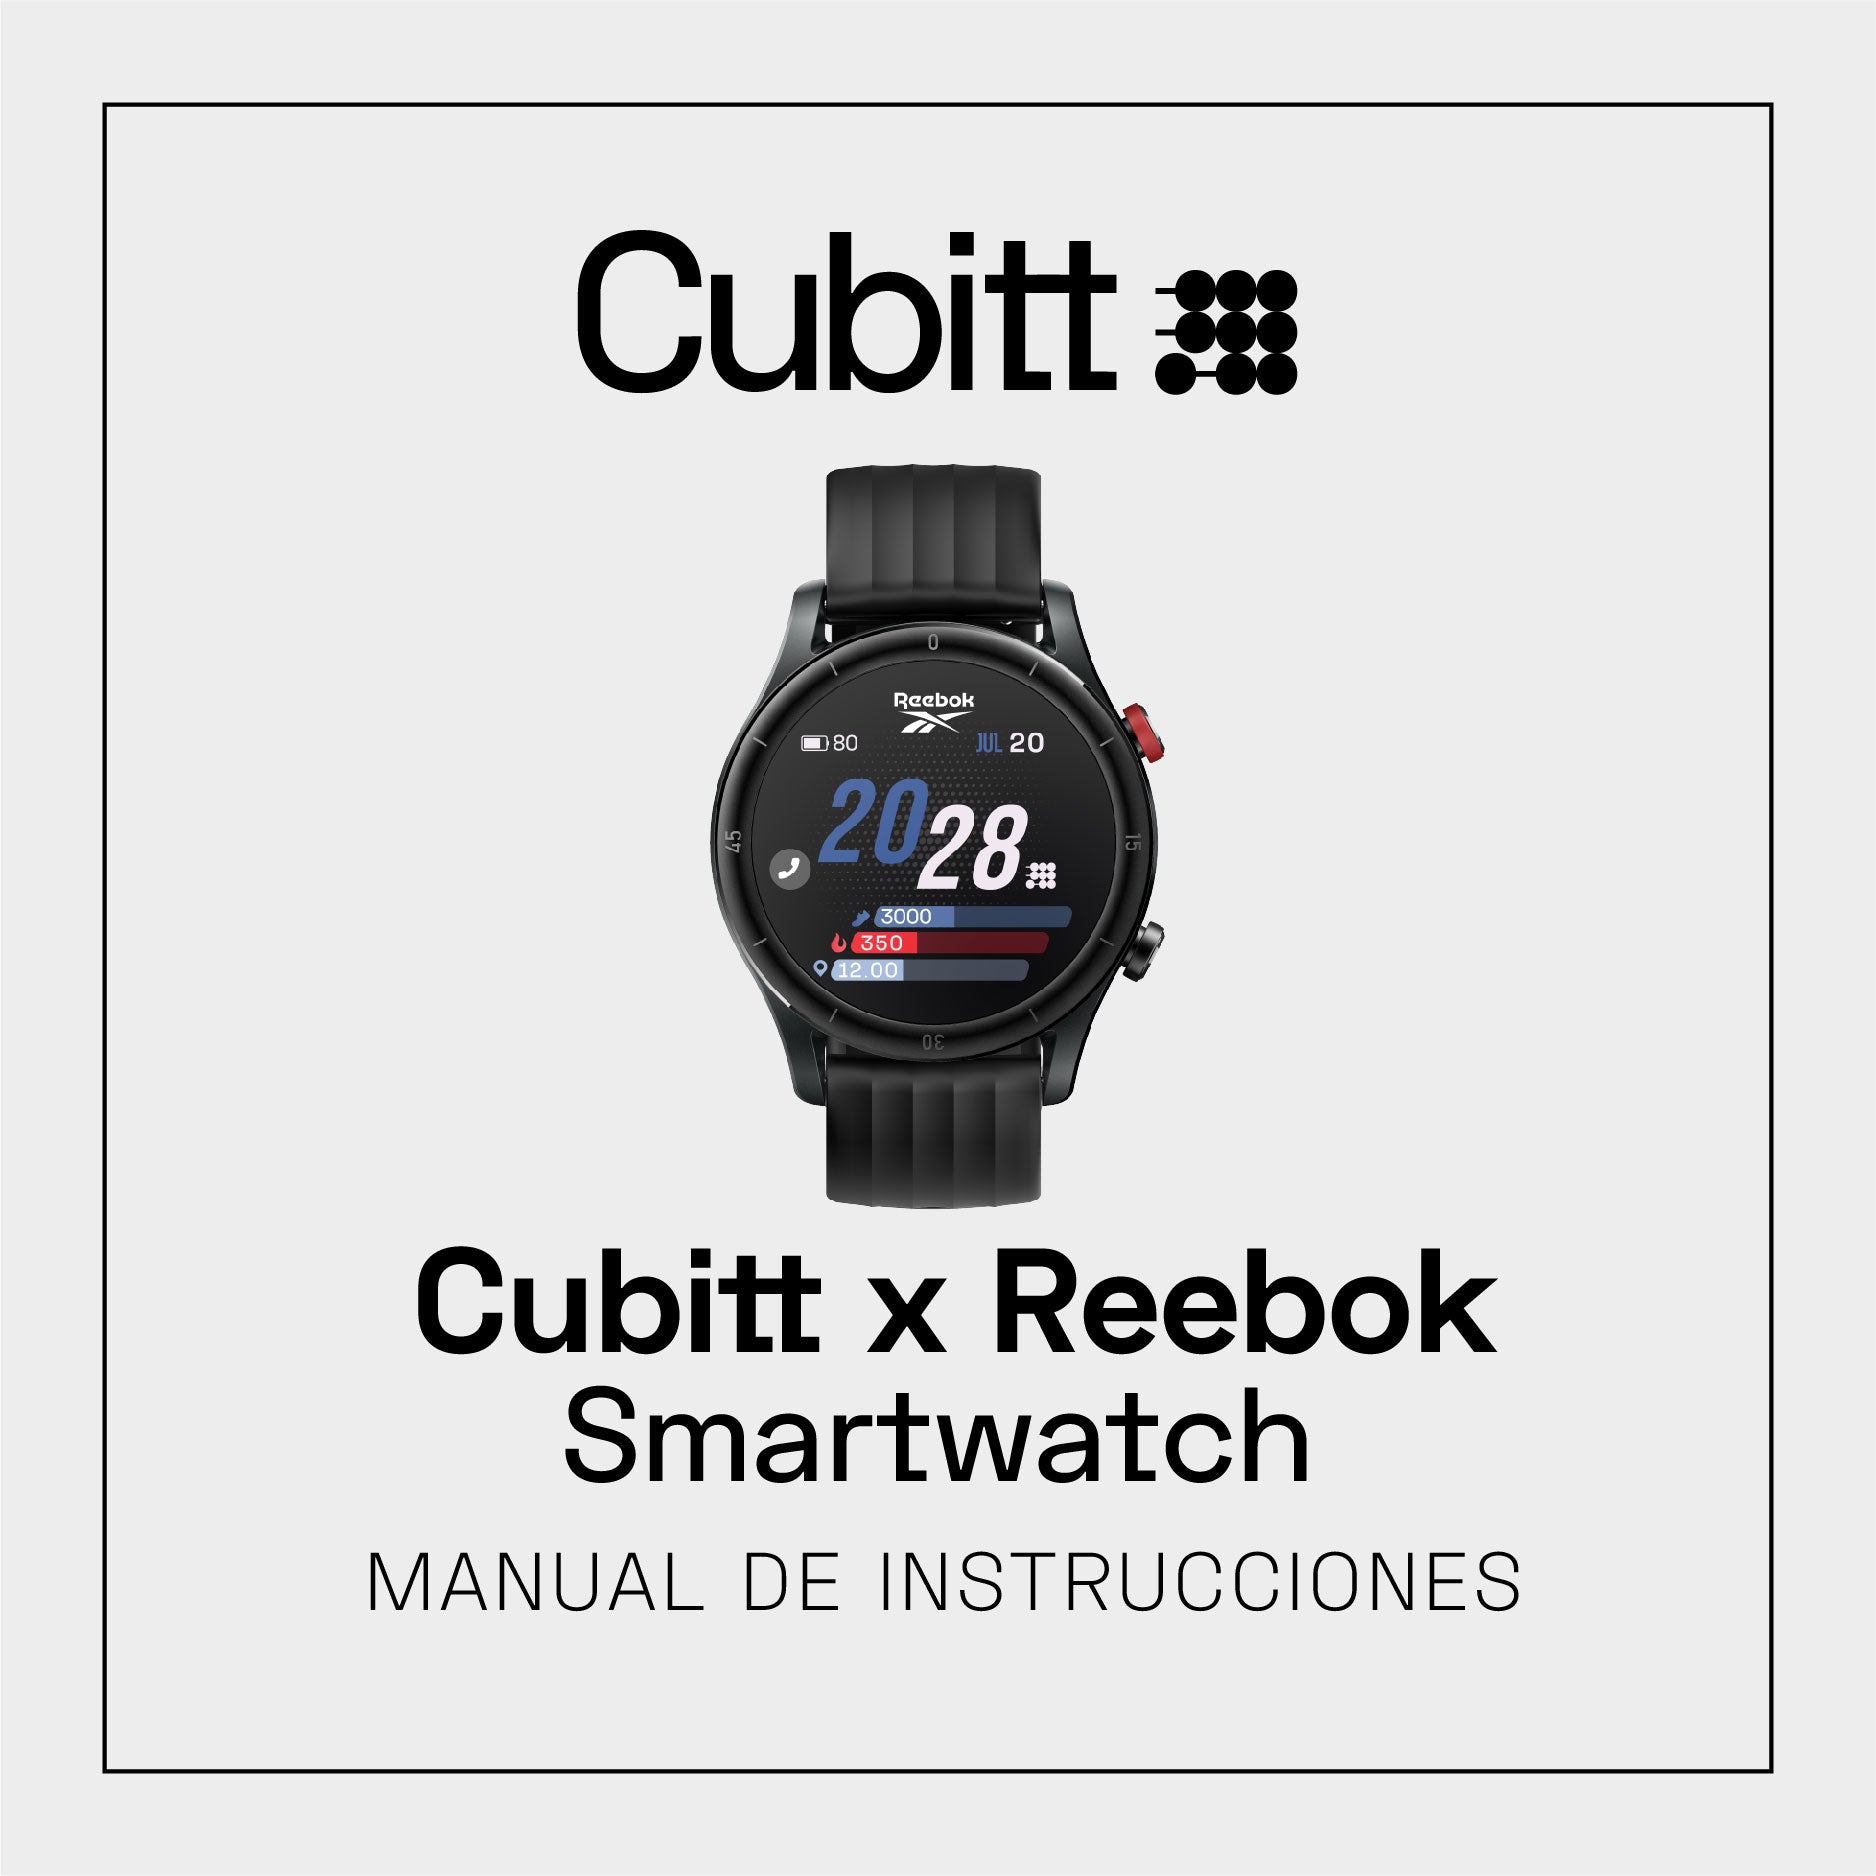 Smartwatch Cubitt x Reebok